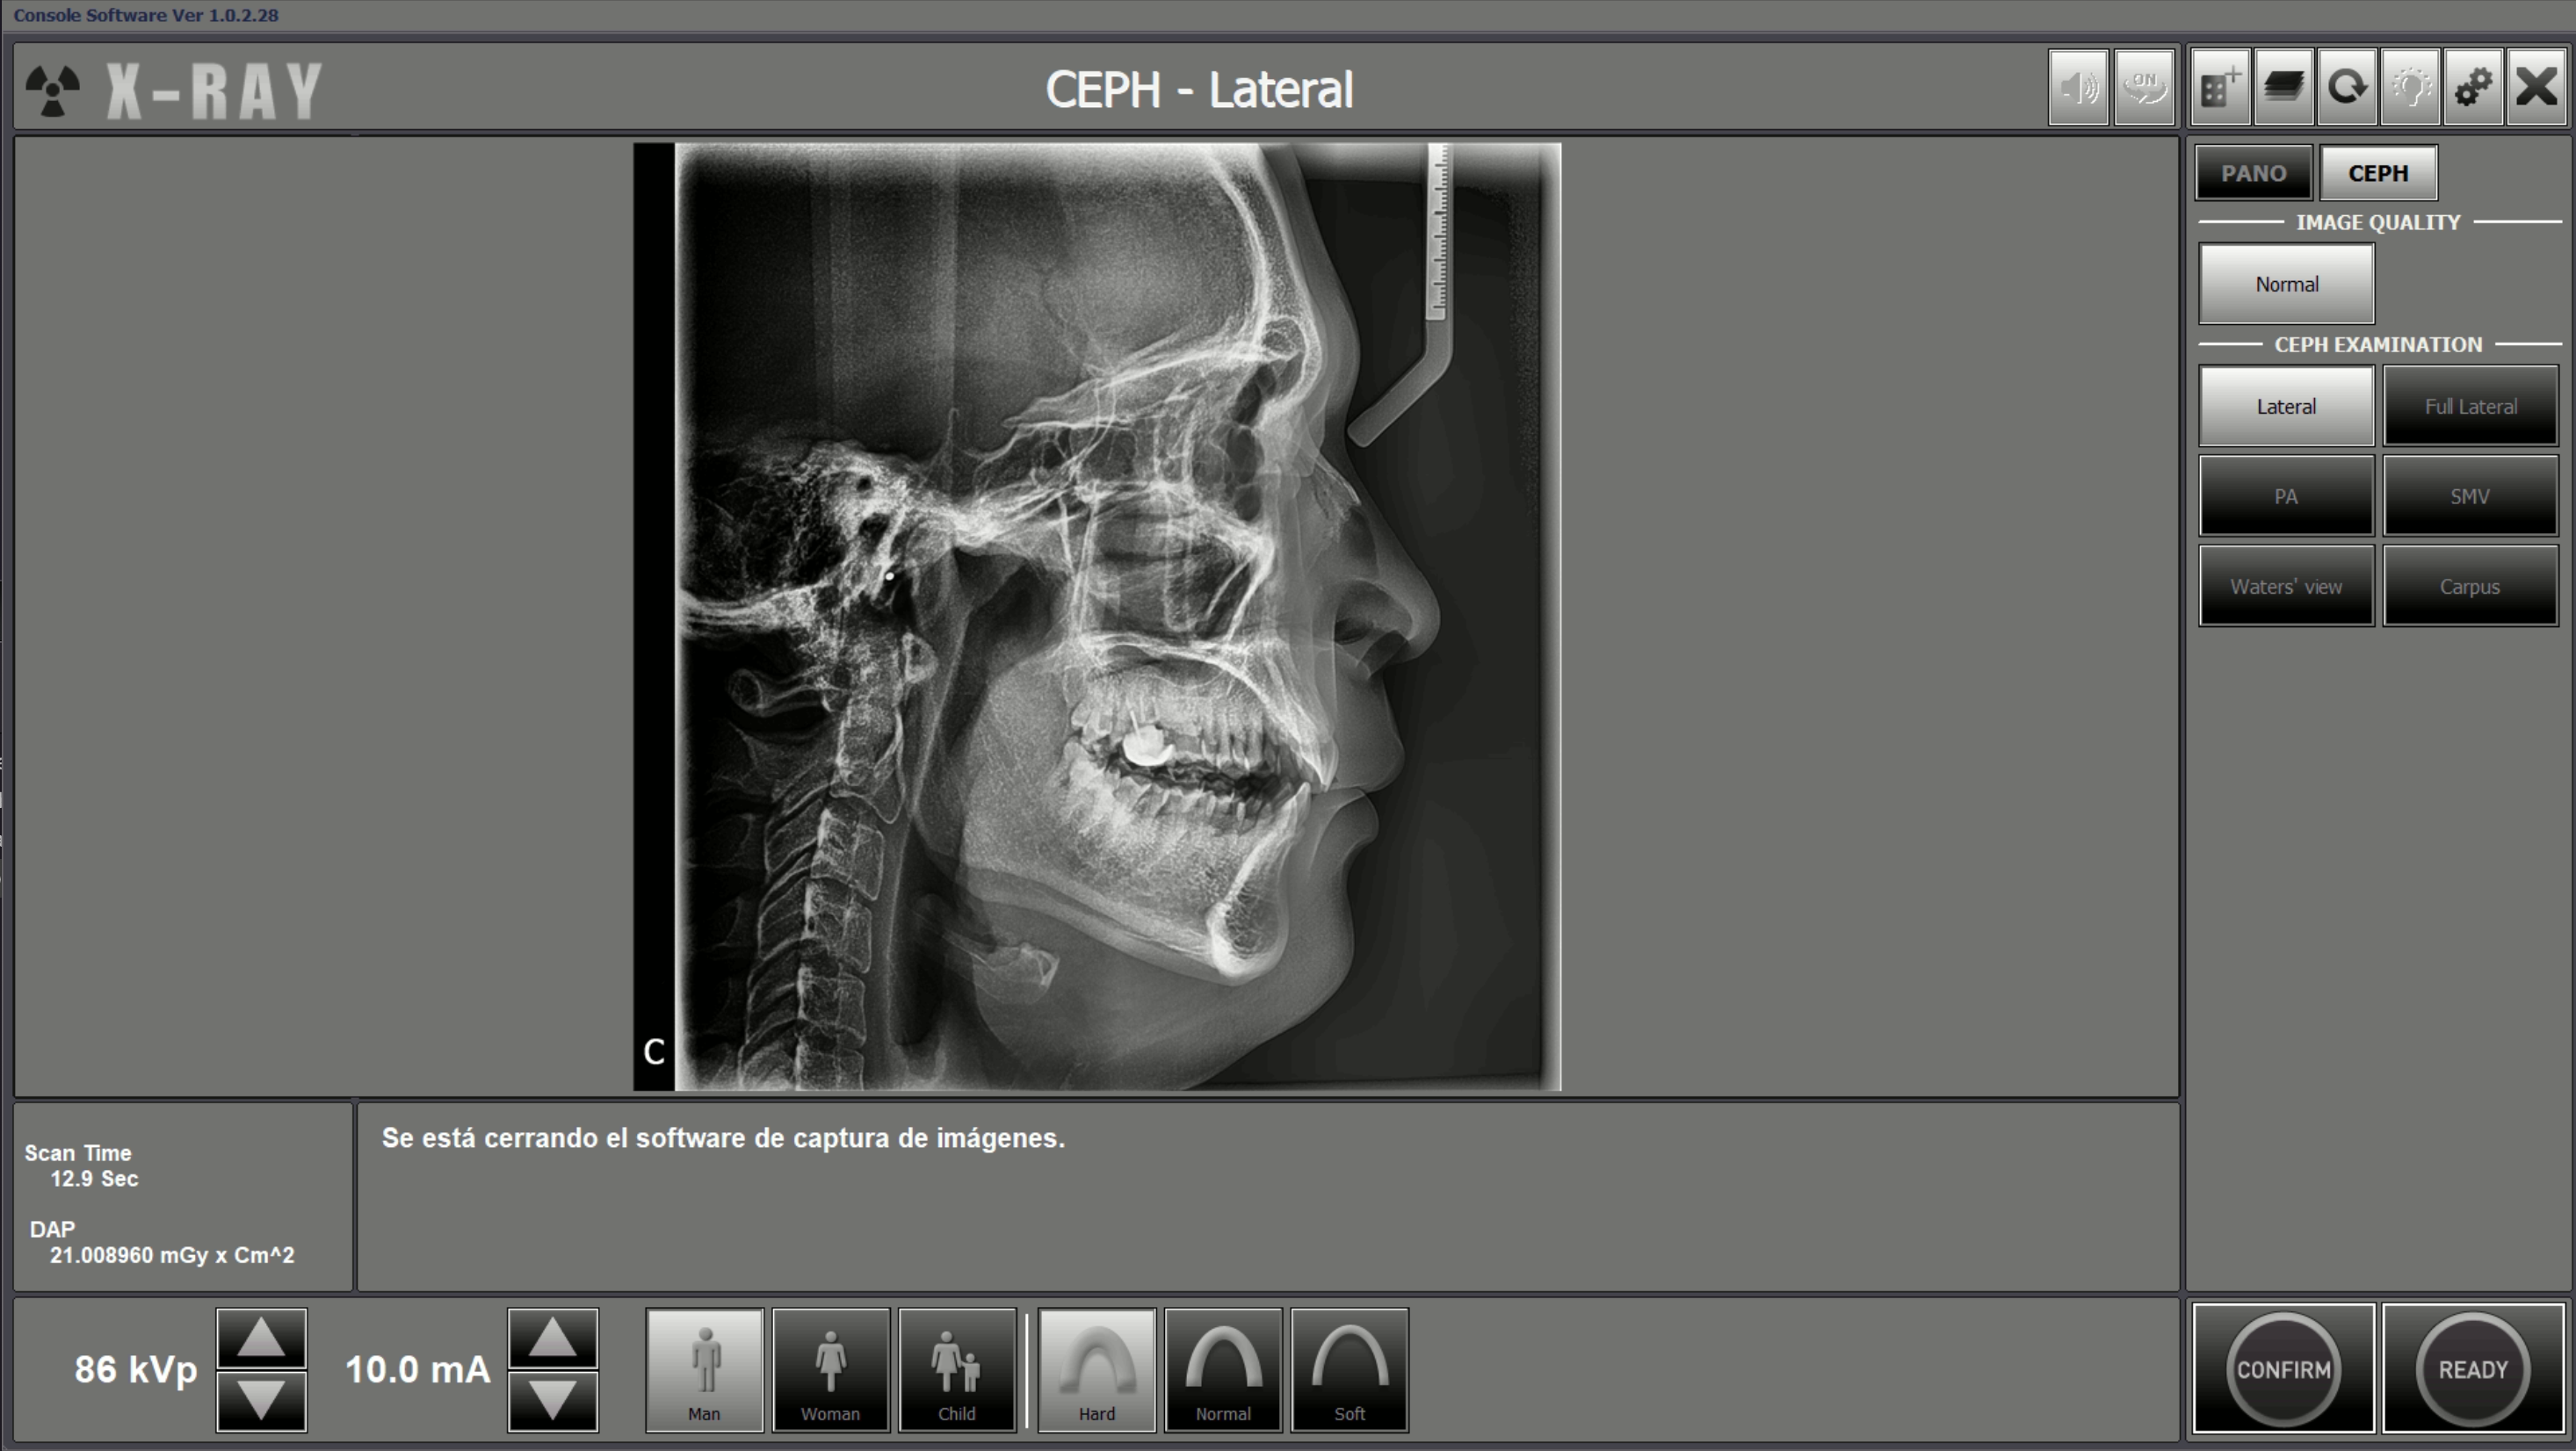 Ortopantomógrafo Vatech Pax i SC - Ez Dent i Ceph 2